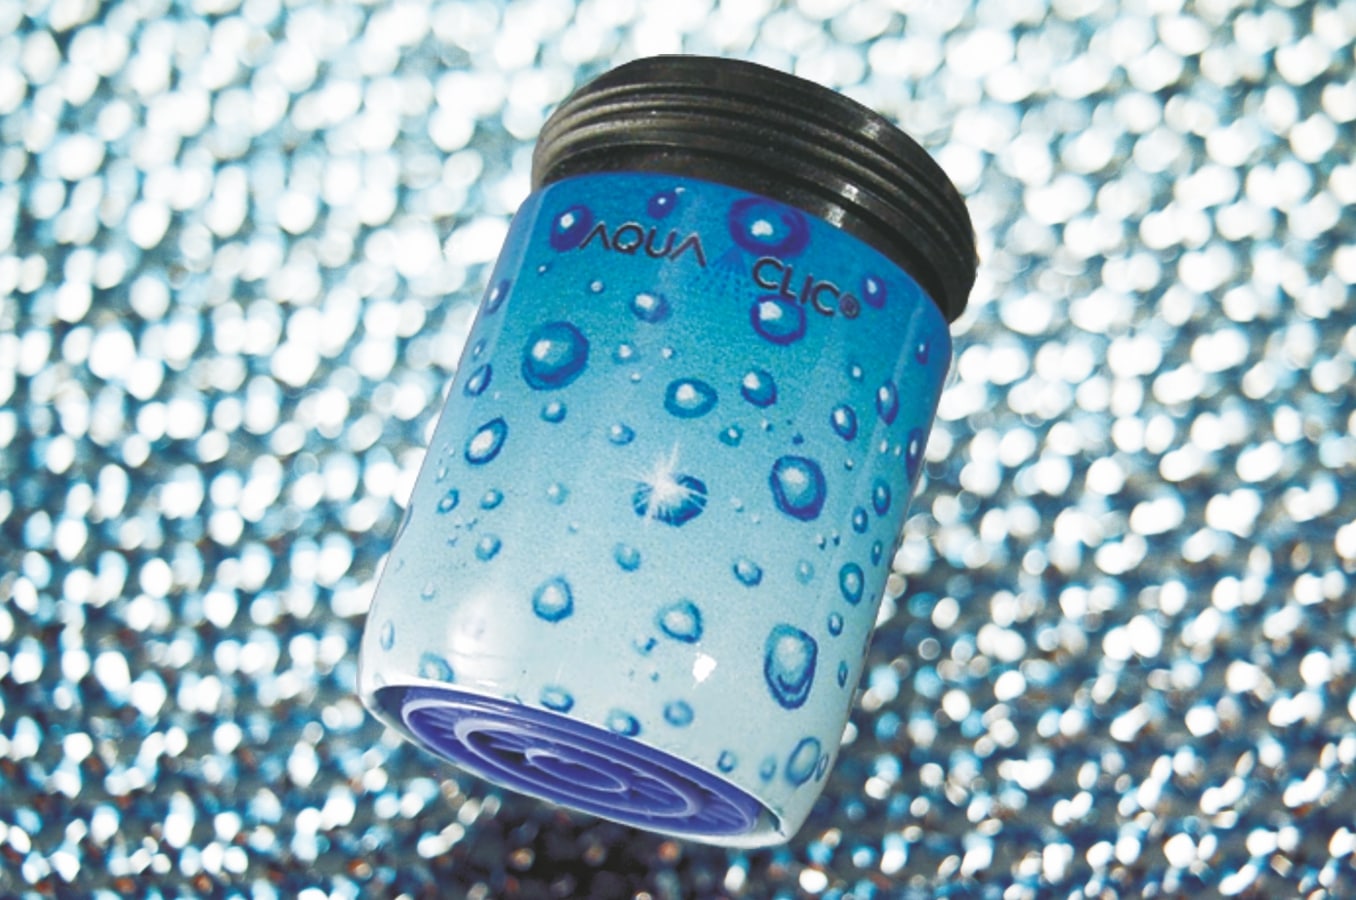 AquaClic-Strahlregler am Hahn mit  Acqua Spumante-Strahlformer: Wasser sparen und die Umwelt schützen